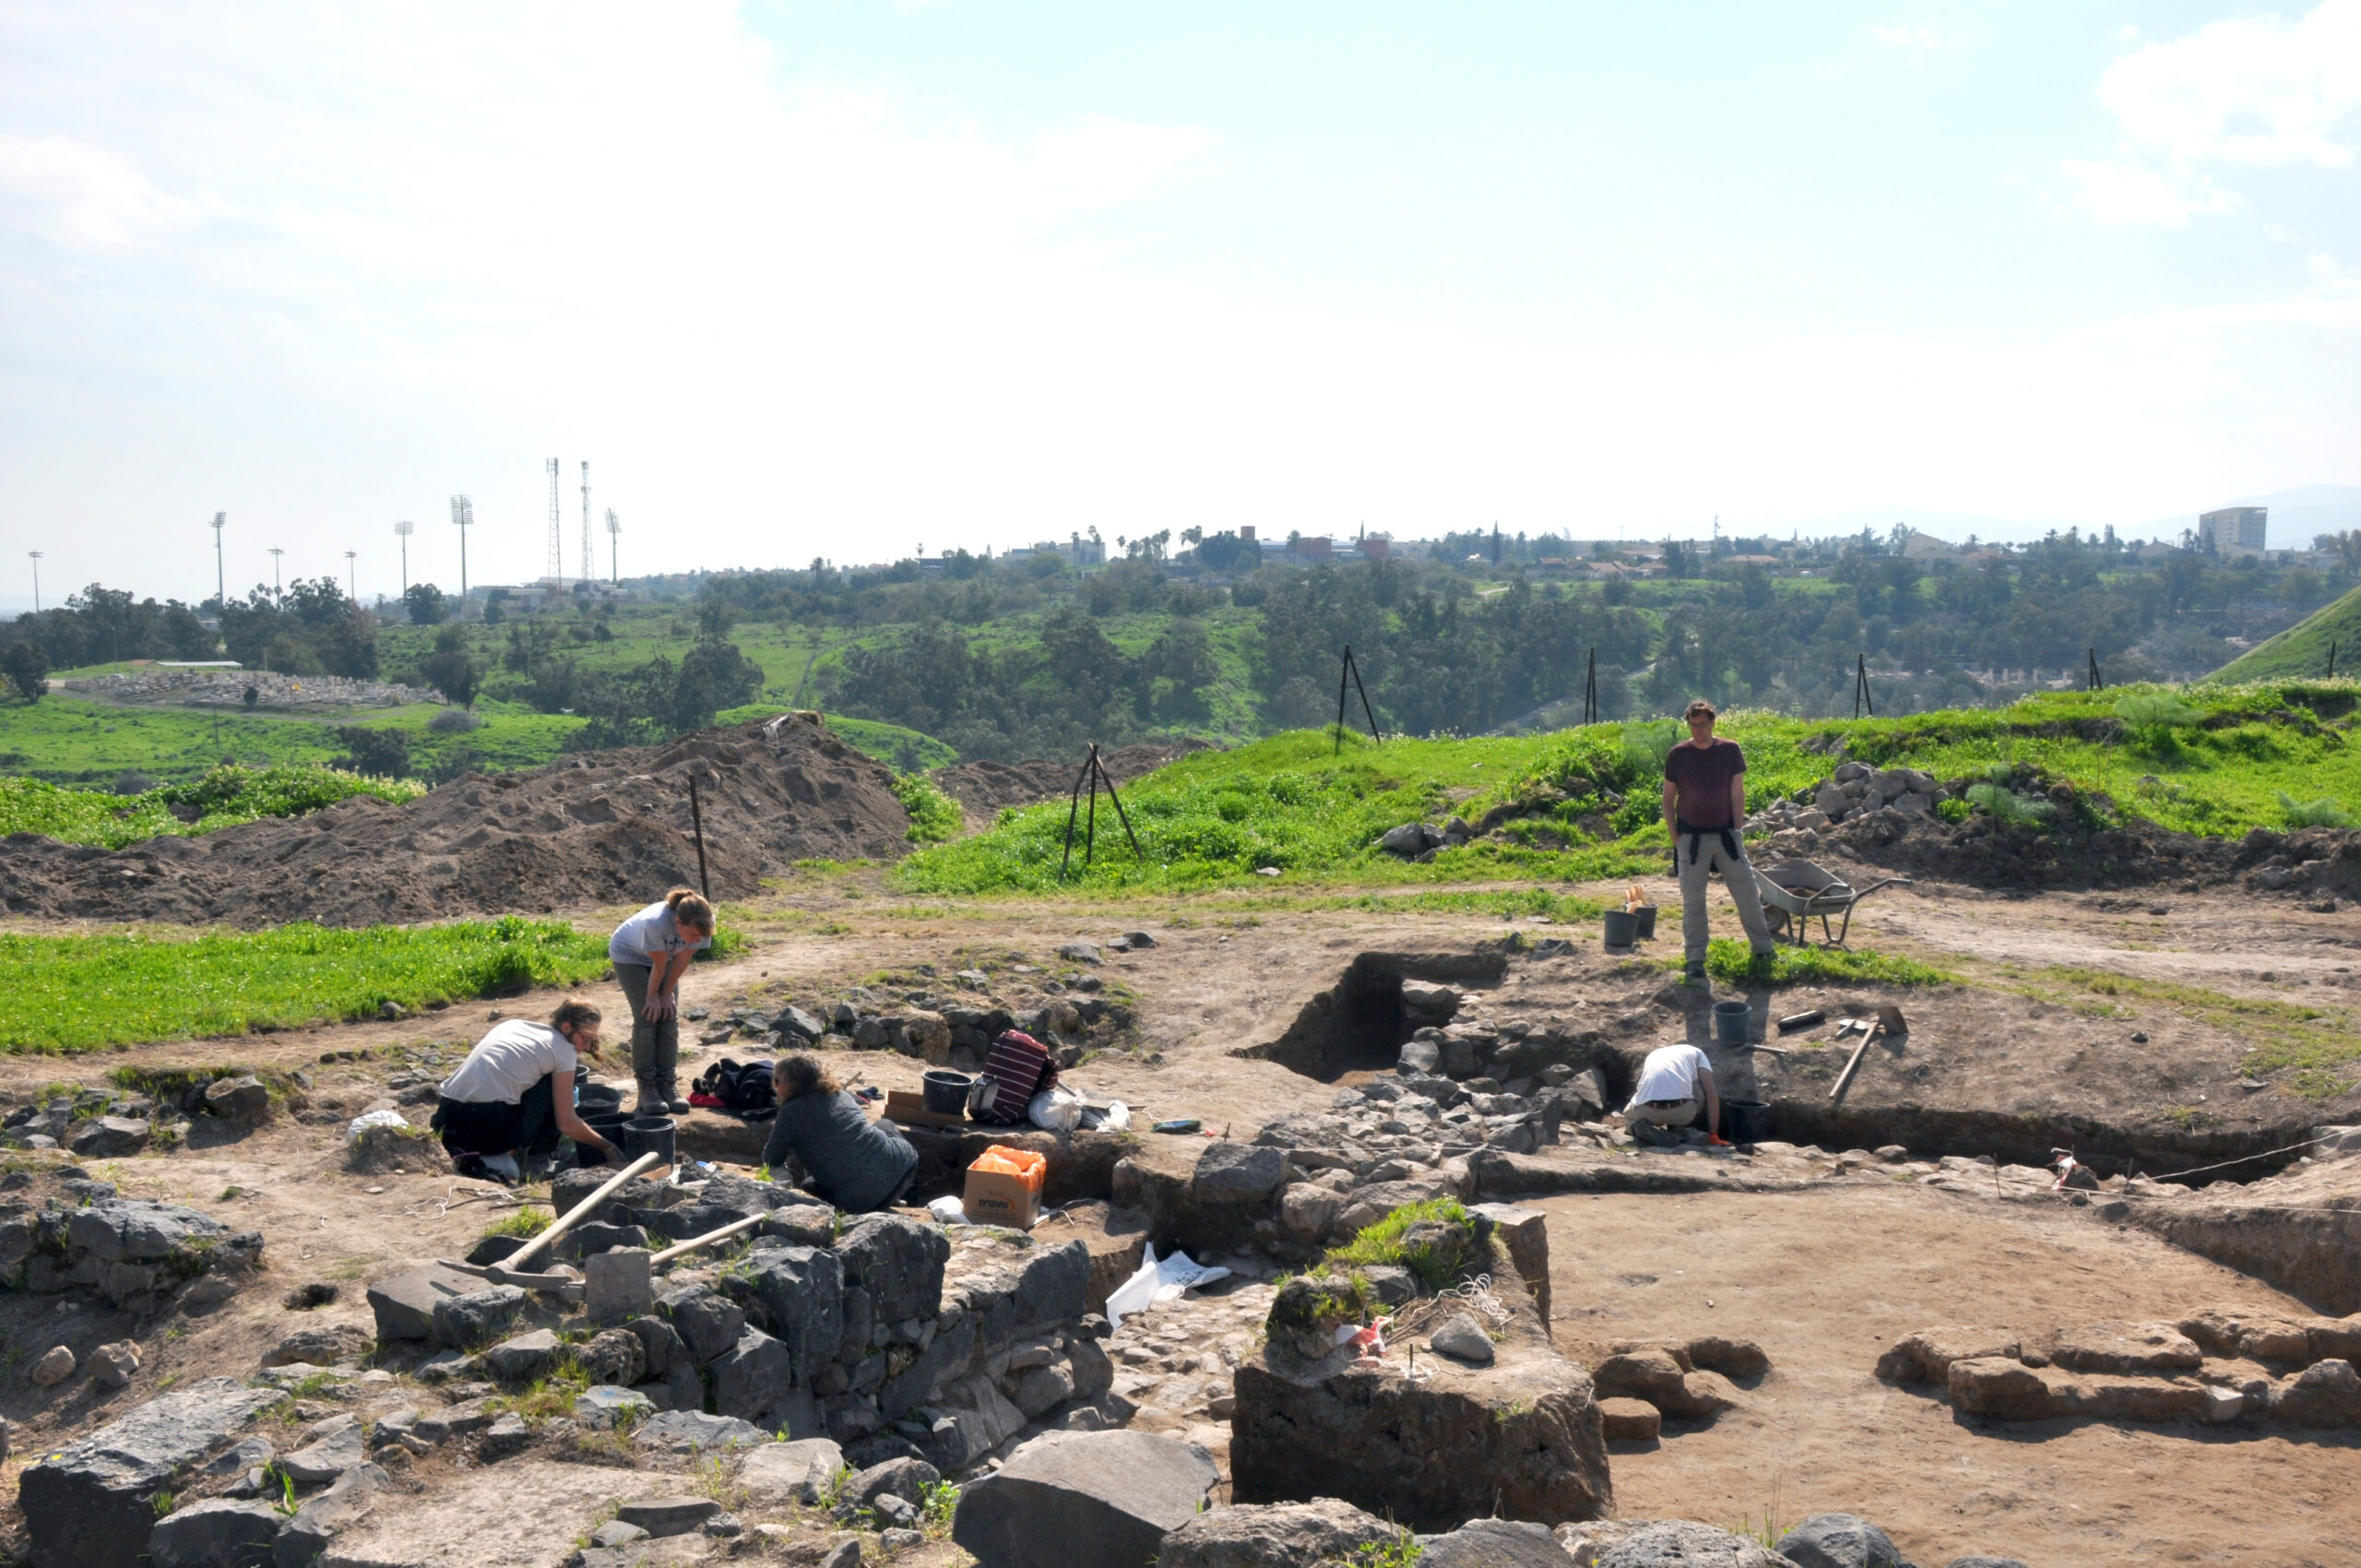 Hühnerknochen und Schneckenhäuser helfen Archäologie bei genauerer datierung die Zerstörung der griechischen Stadt Tell Iẓṭabba